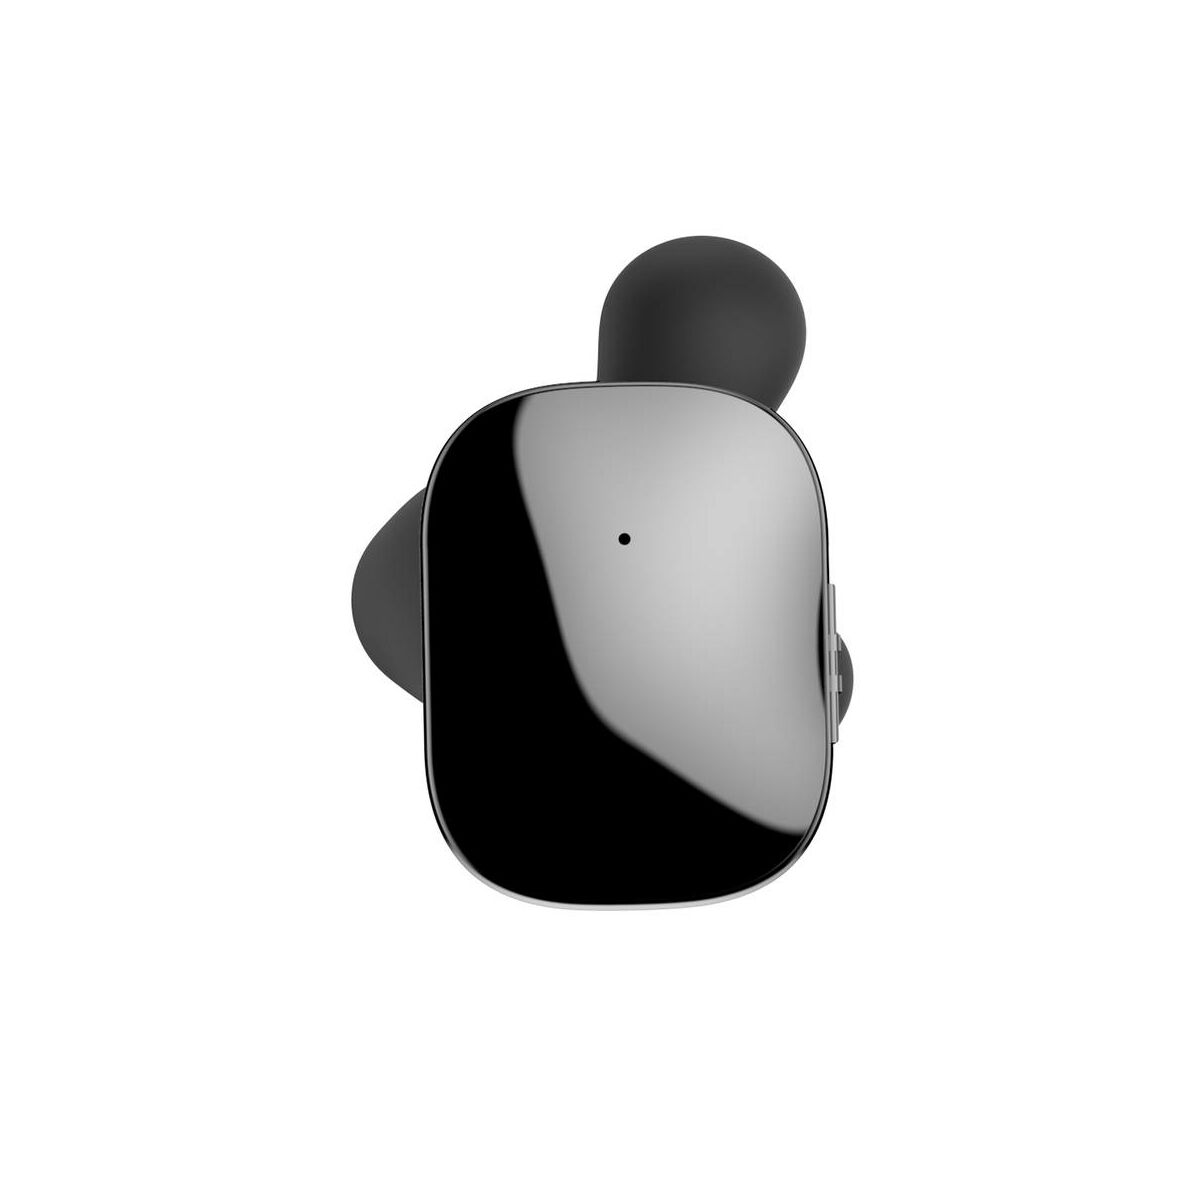 Kép 4/10 - Baseus fülhallgató, Bluetooth Encok W02, Truly Wireless Touch Control, Binaural, zajcsökkentés, HD hang, BT 4.2, fekete (NGW02-01)